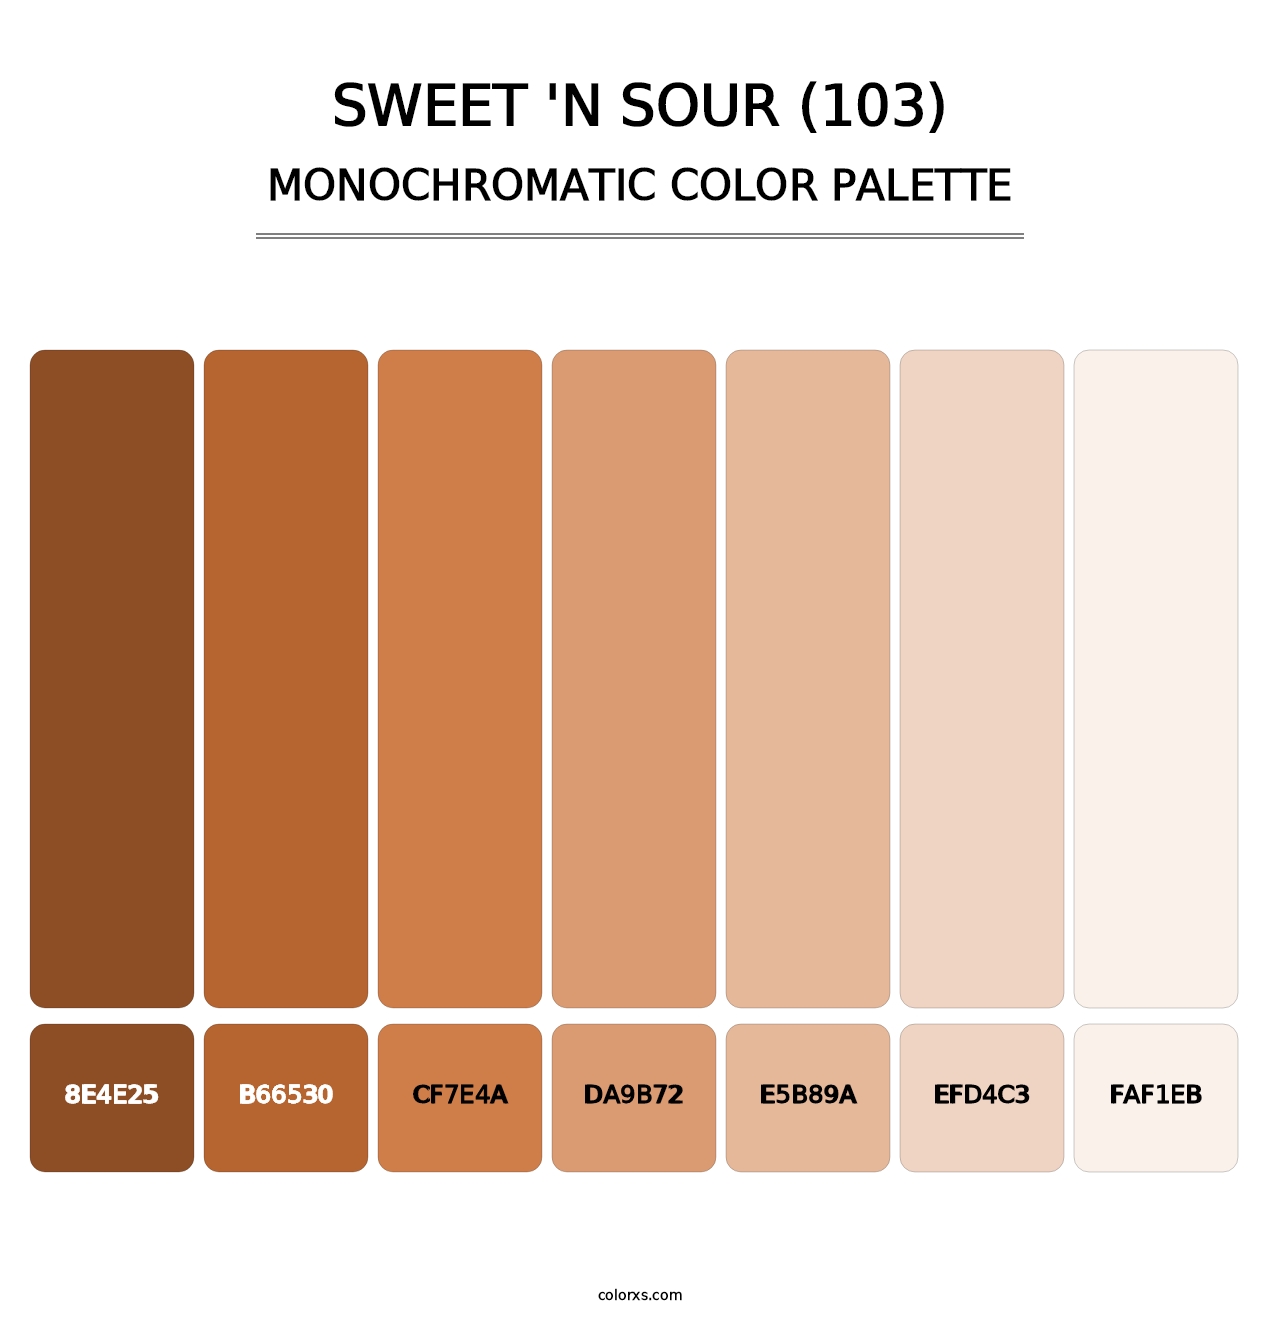 Sweet 'n Sour (103) - Monochromatic Color Palette